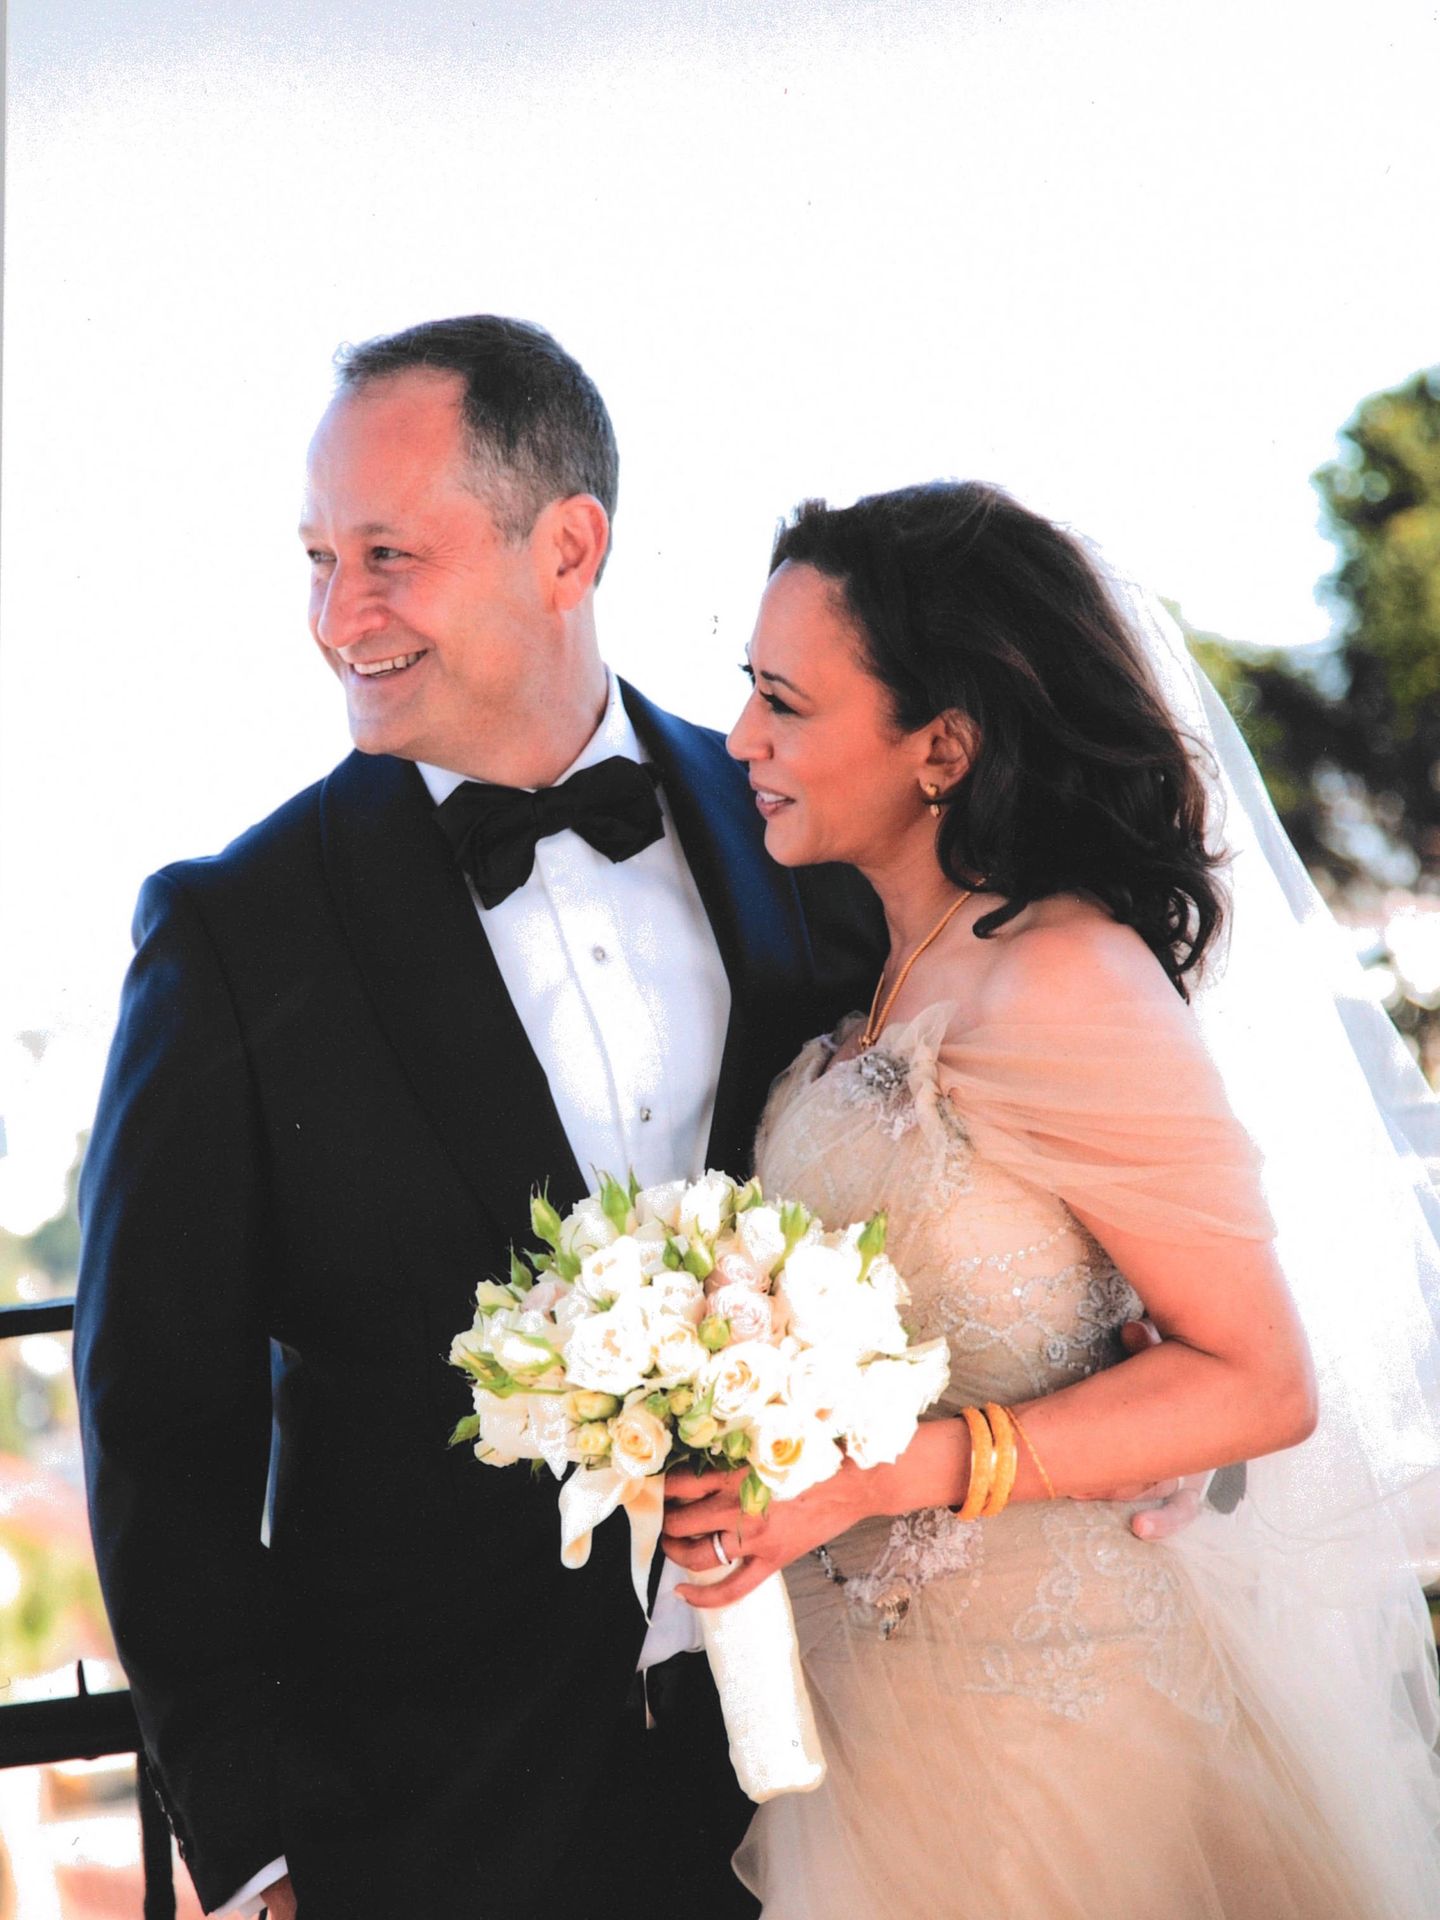 La boda de Kamala y Doug, en 2014. (Archivo de la autora)